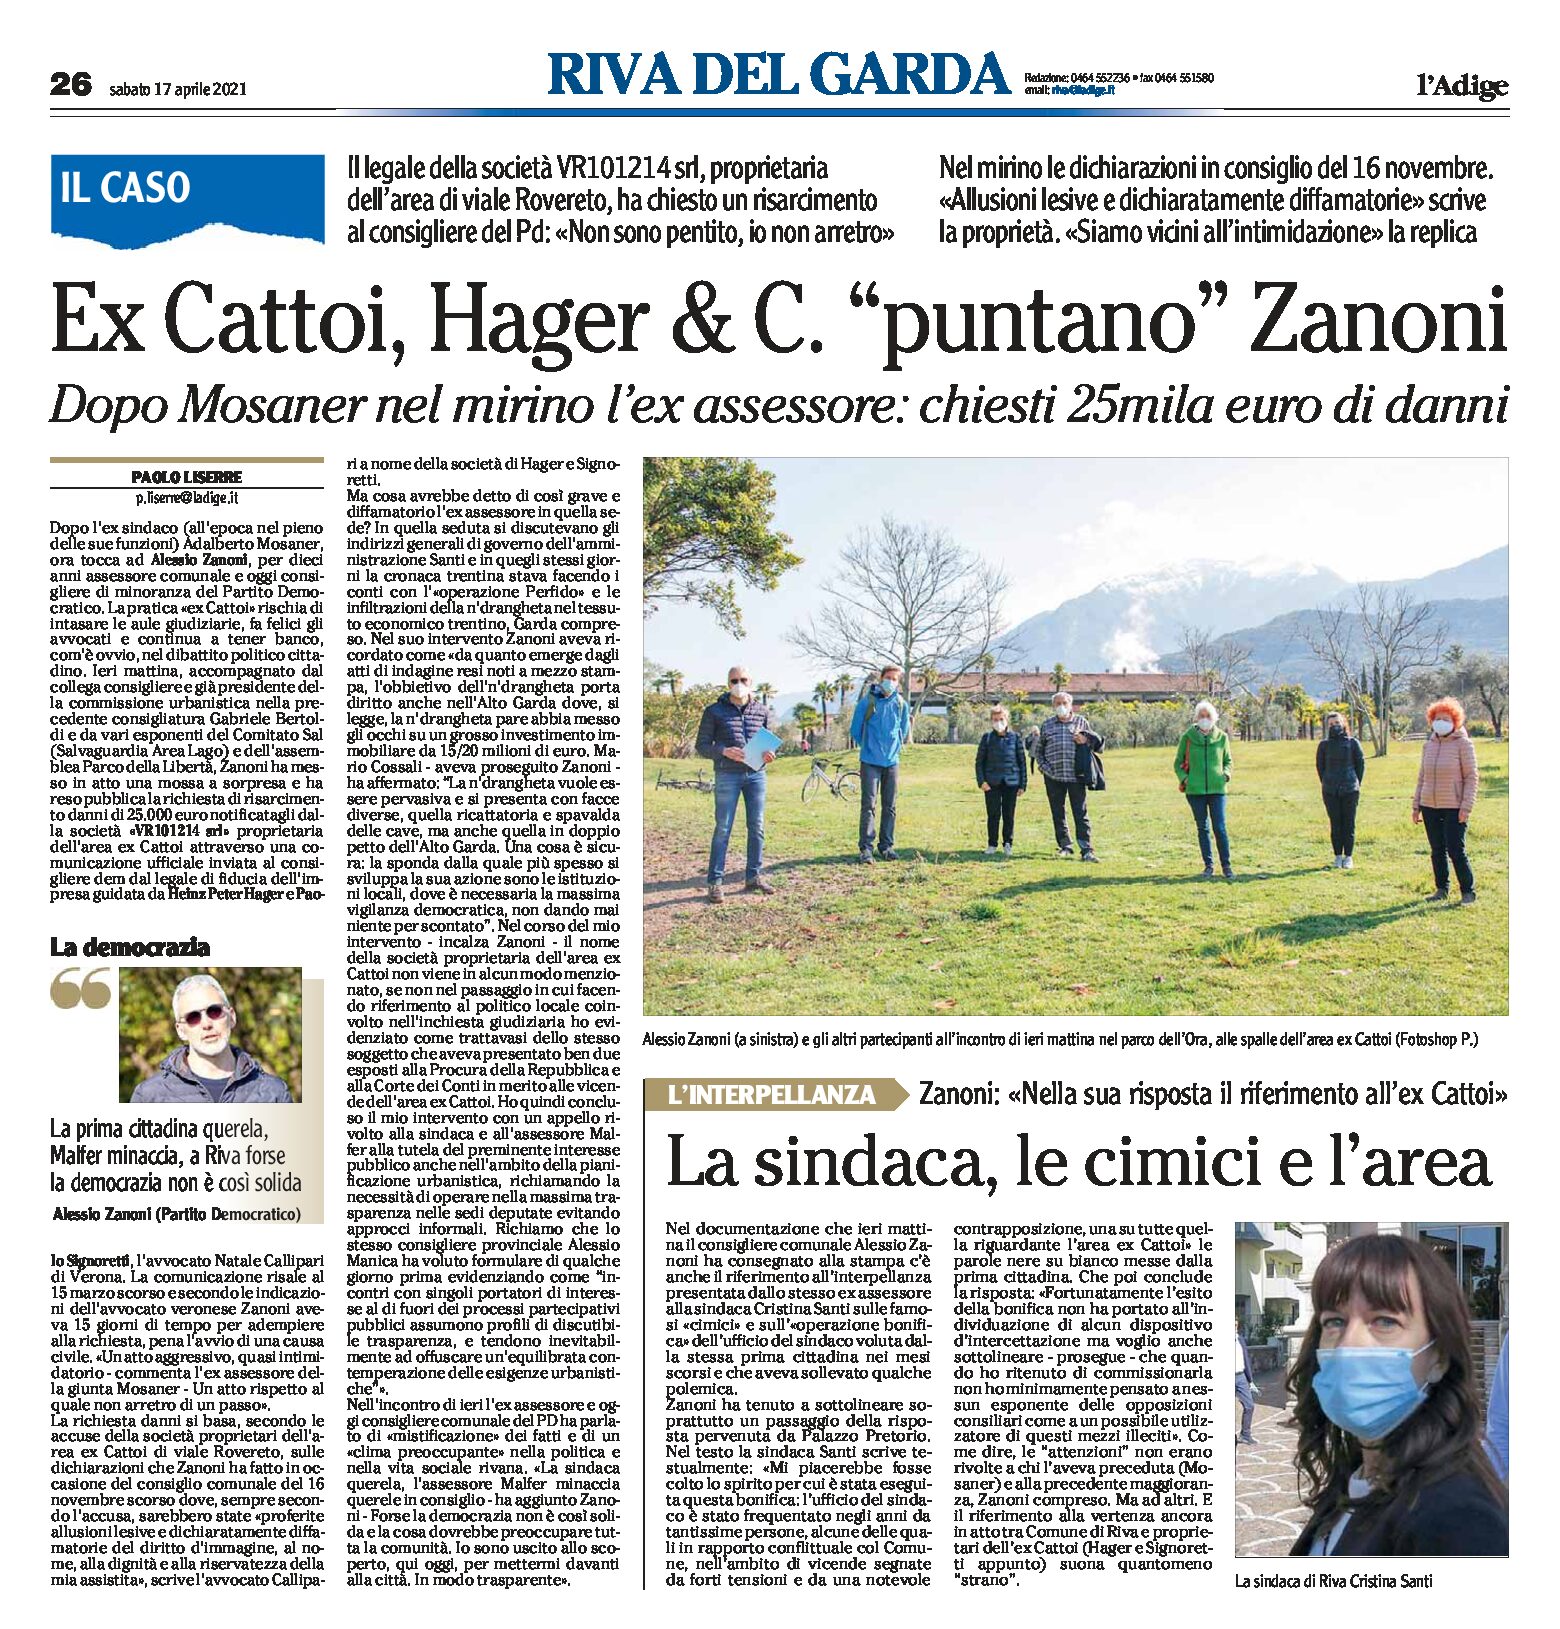 Riva: ex Cattoi, Hager & C. “puntano” Zanoni